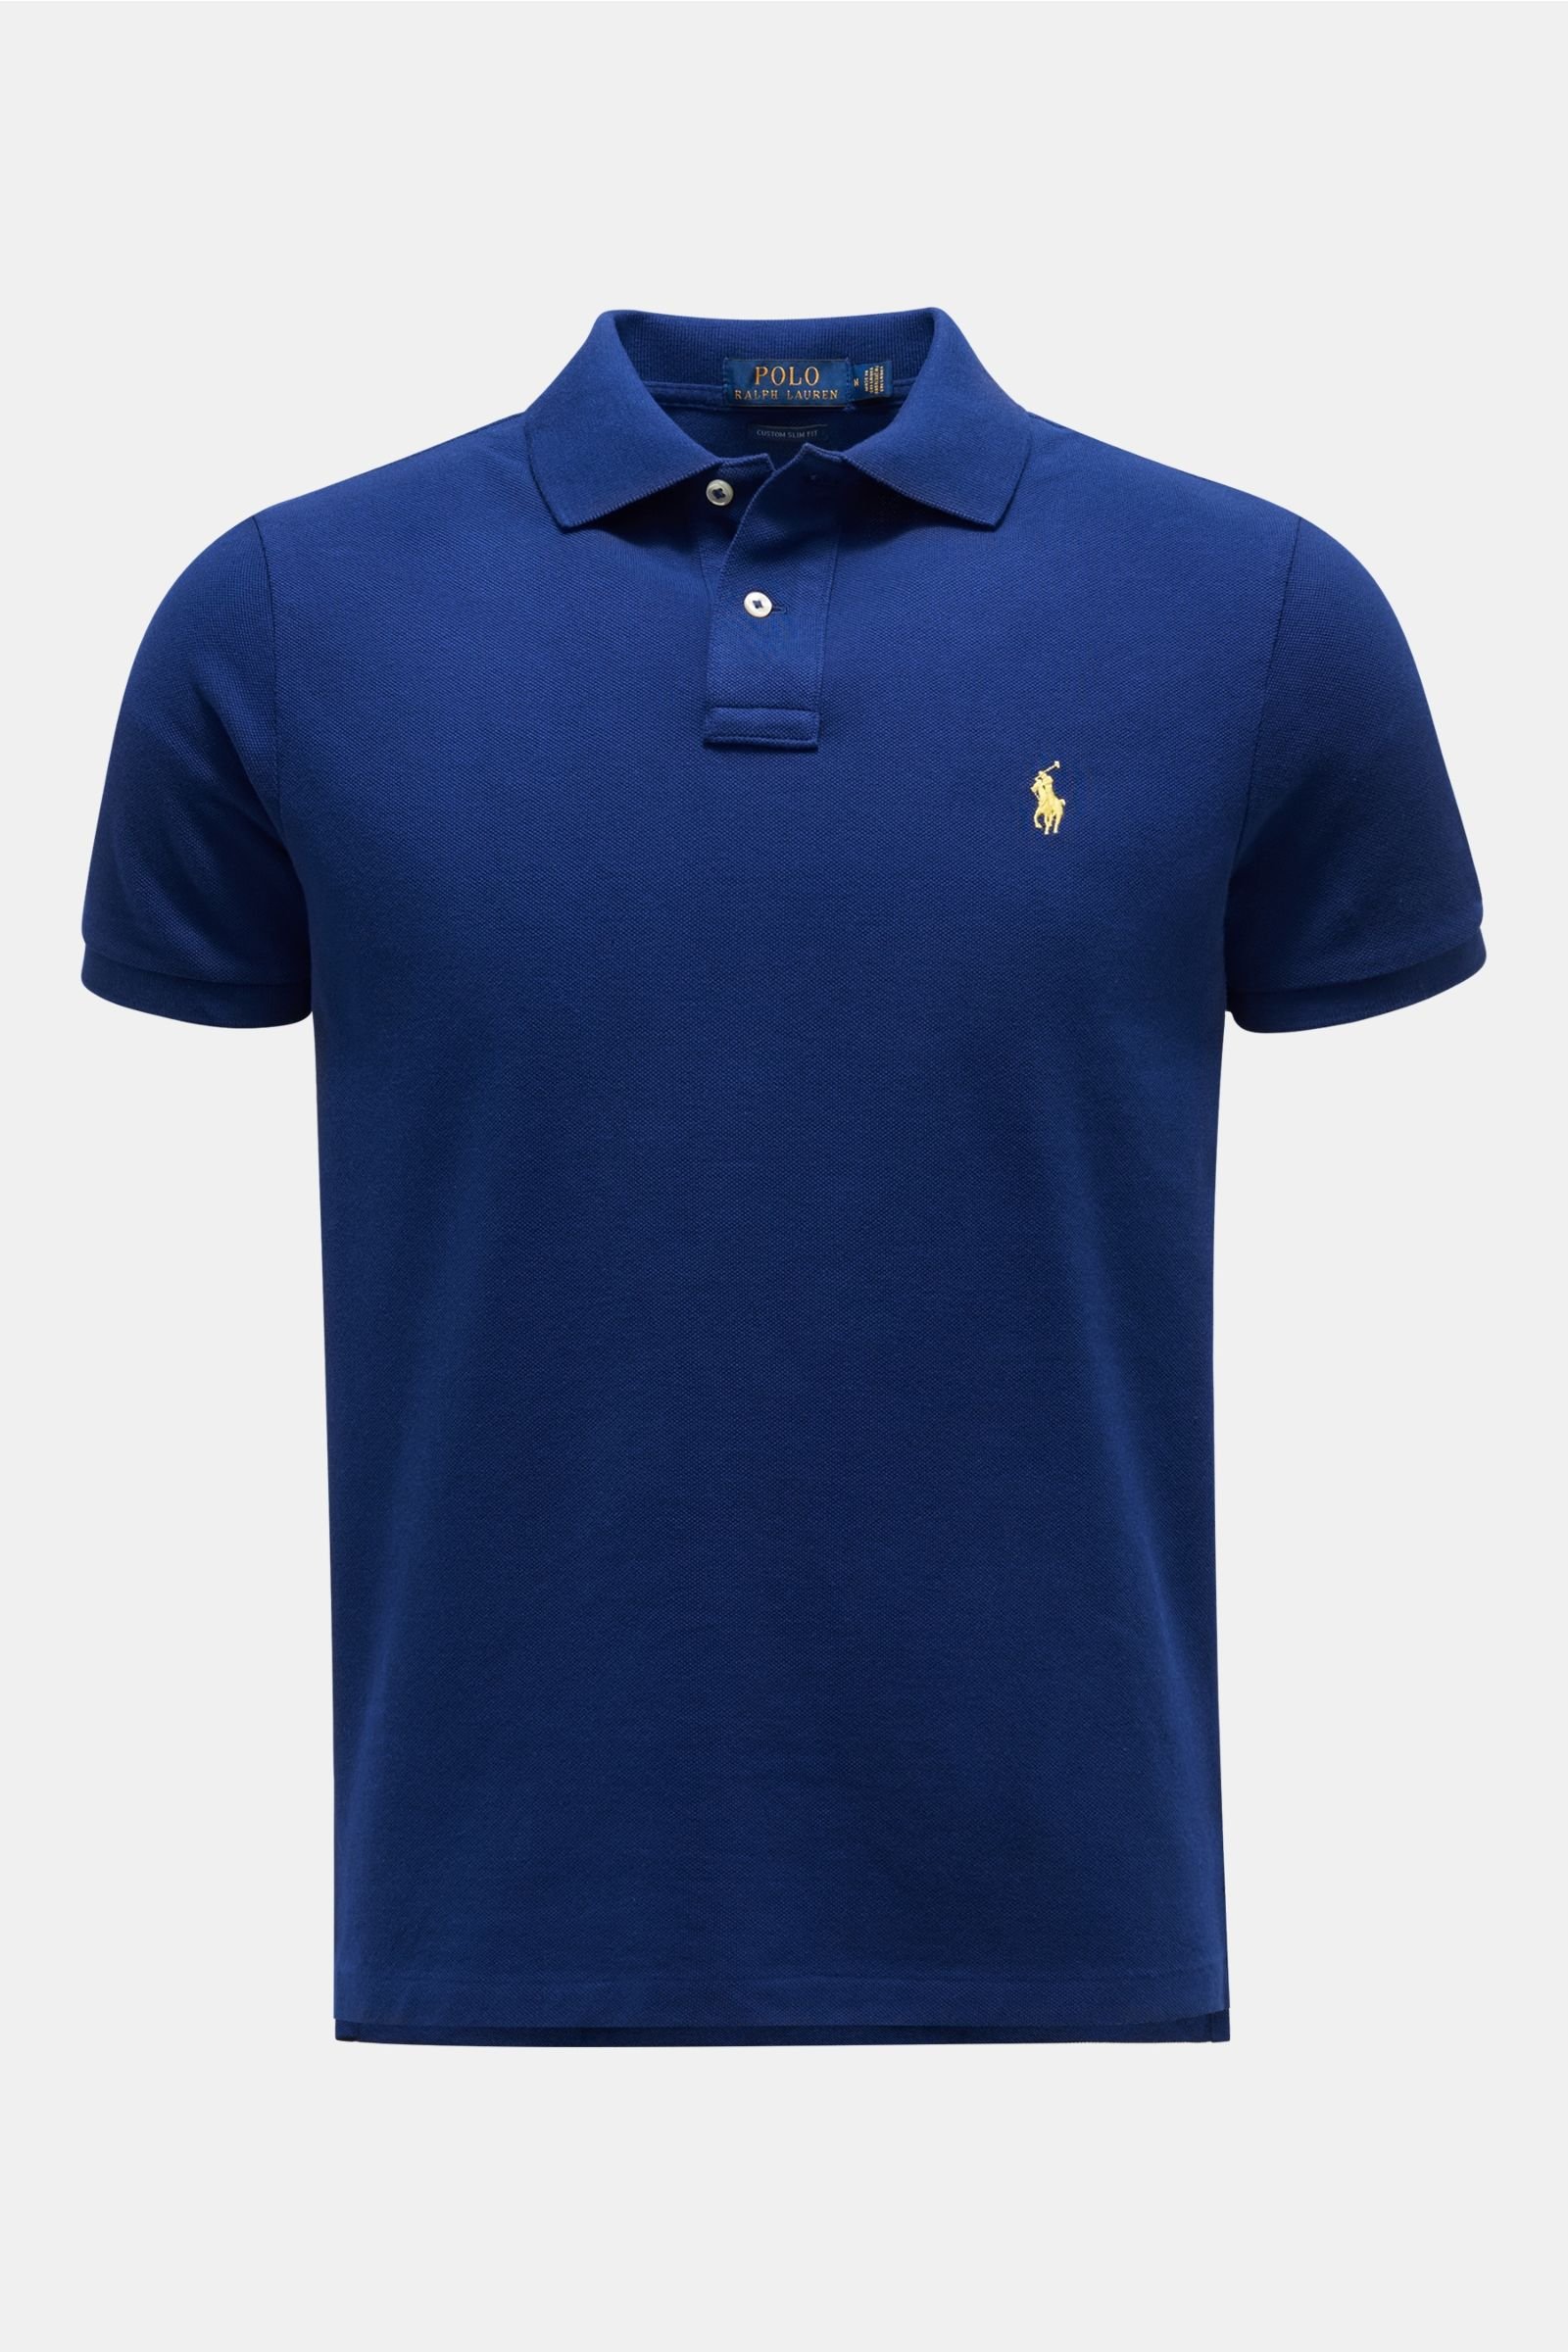 Polo shirt dark blue